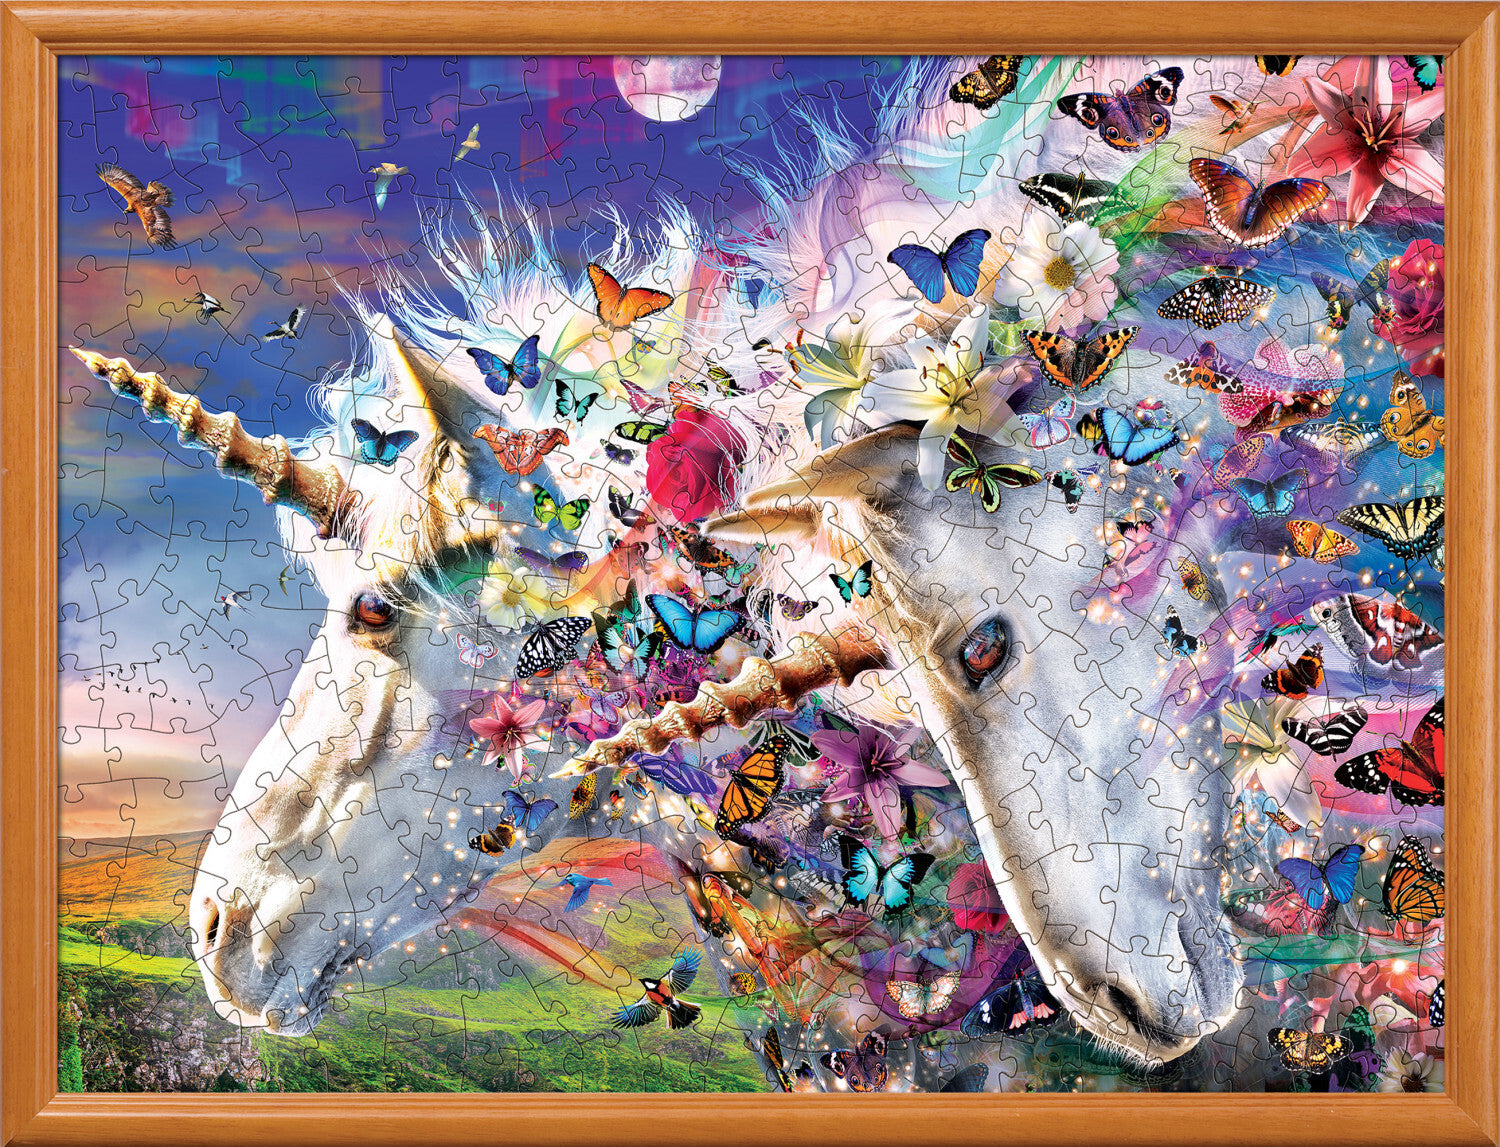 Medley - Unicorns & Butterflies 300 Piece EZ Grip Puzzle